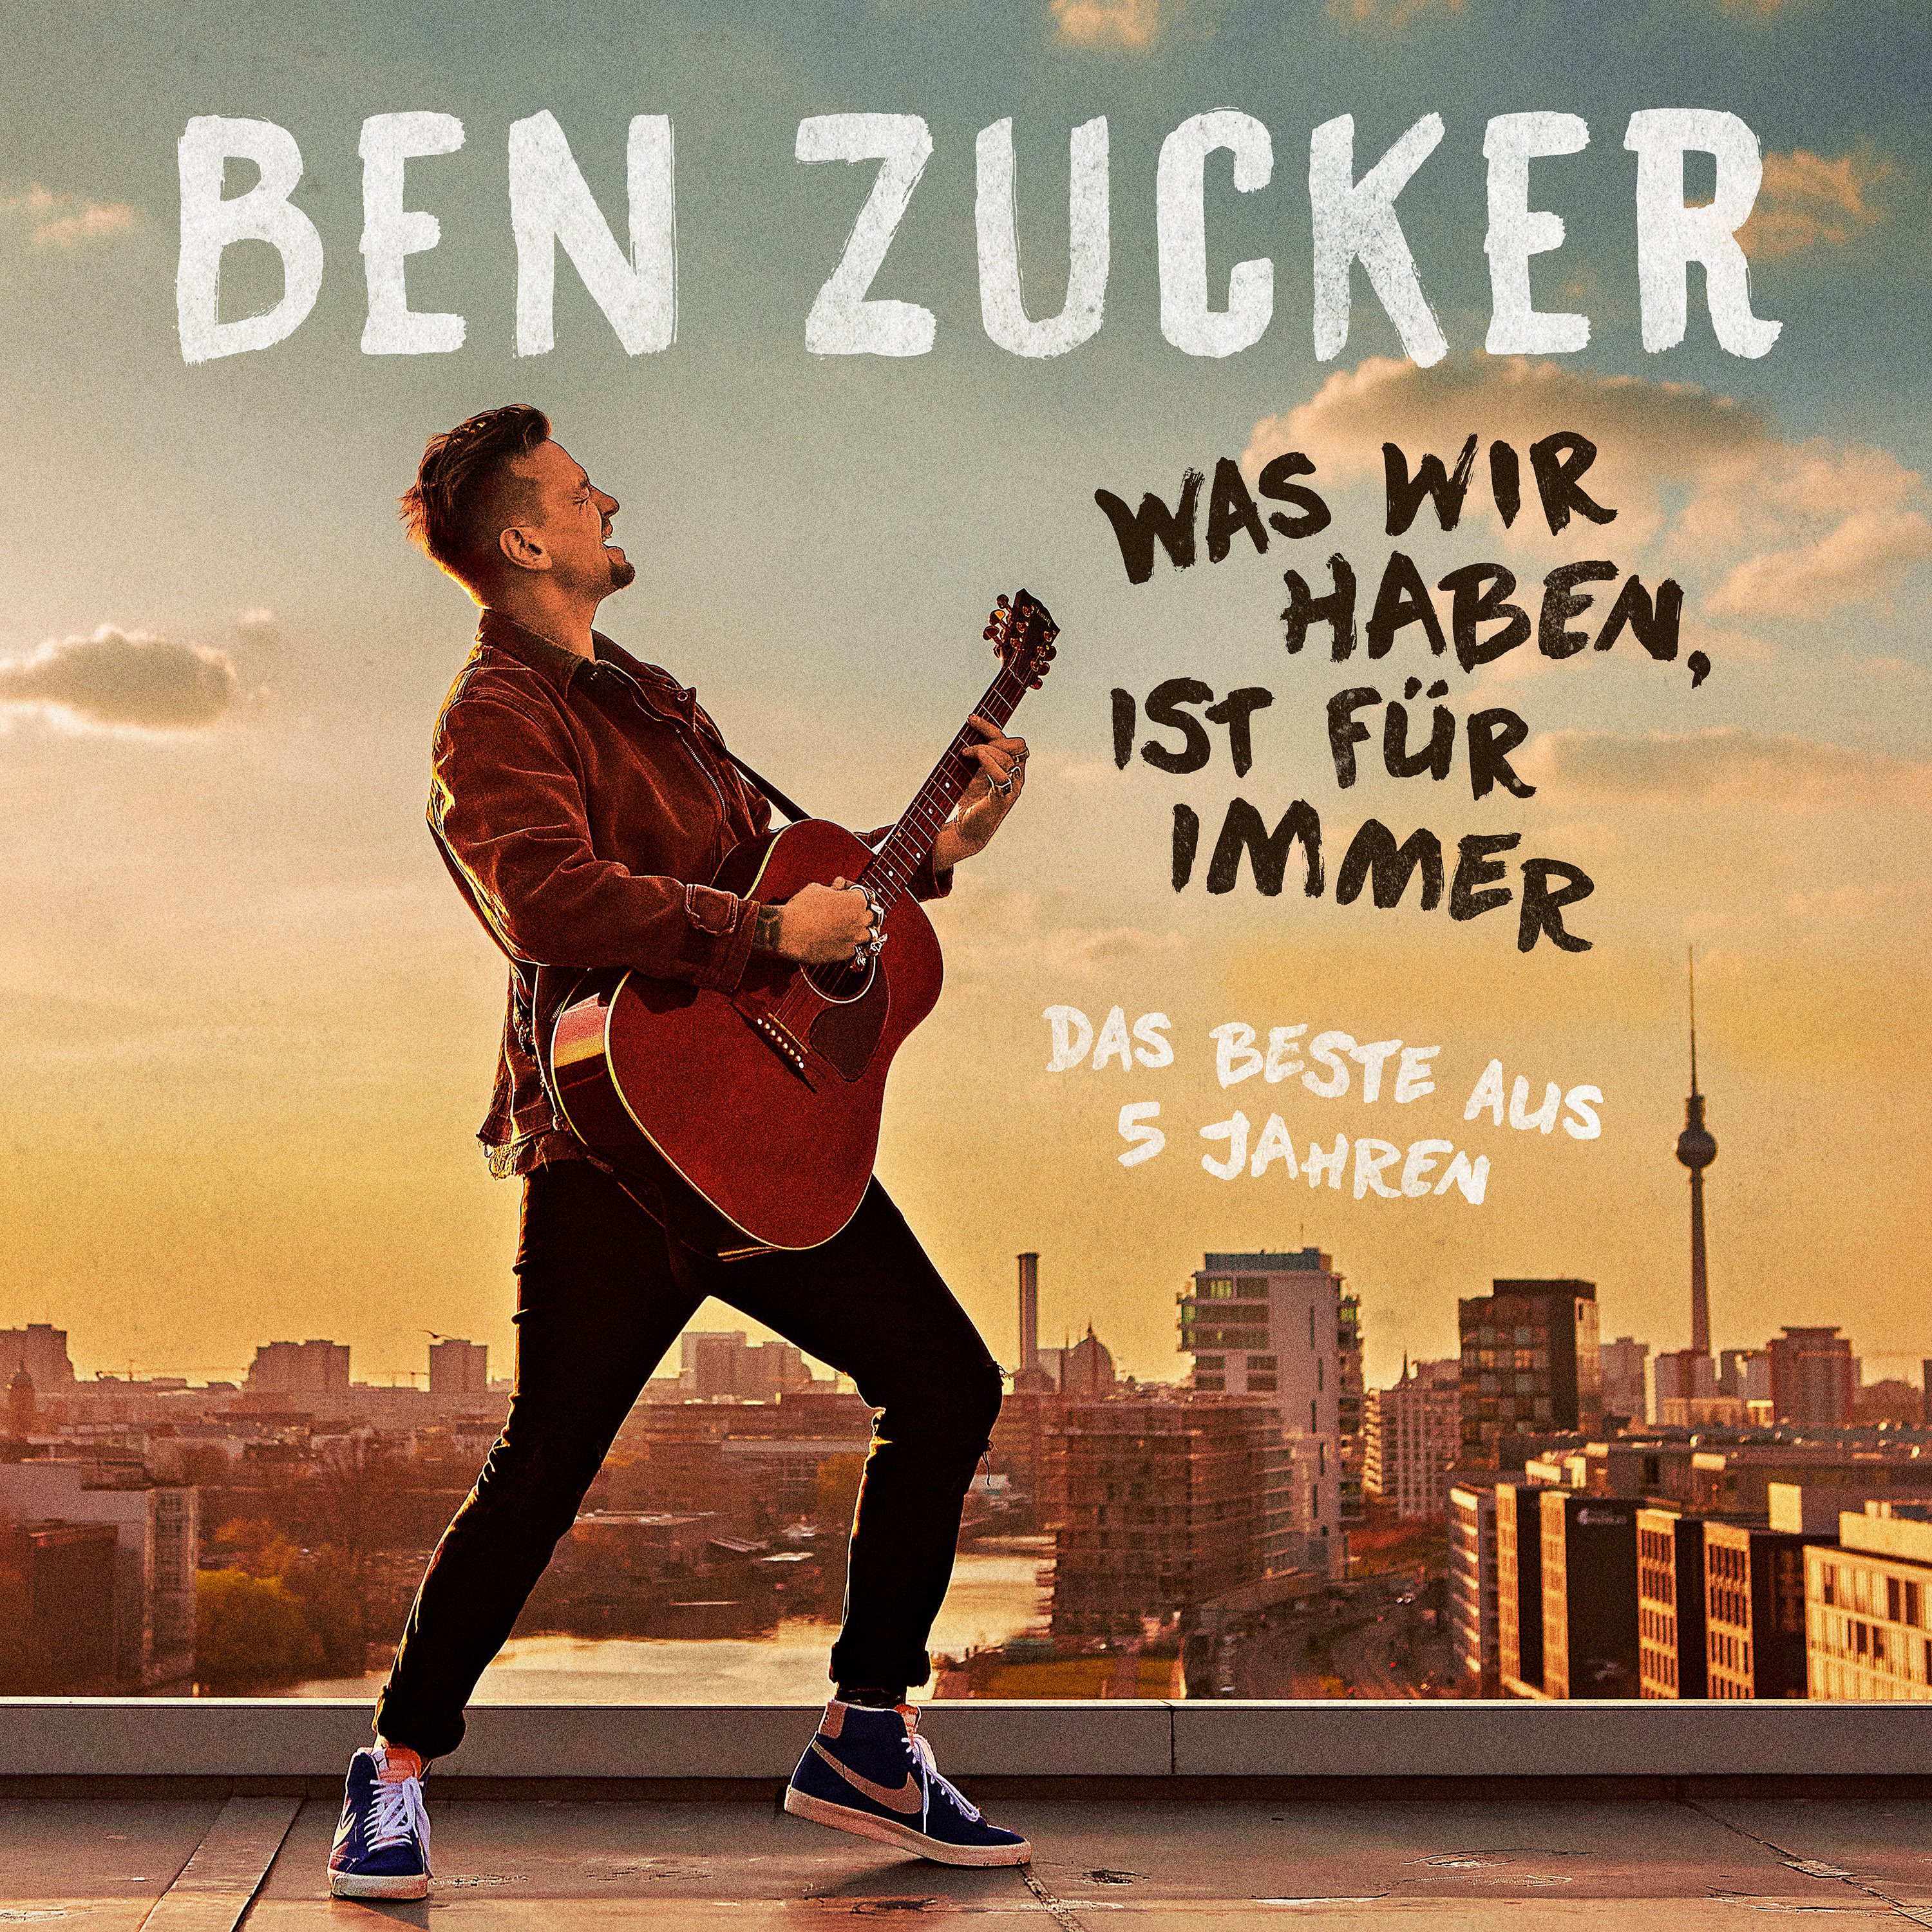 Für - Wir Ben (CD) (Ltd.Fotobuch Haben,Ist Zucker - Was Ed.) Immer